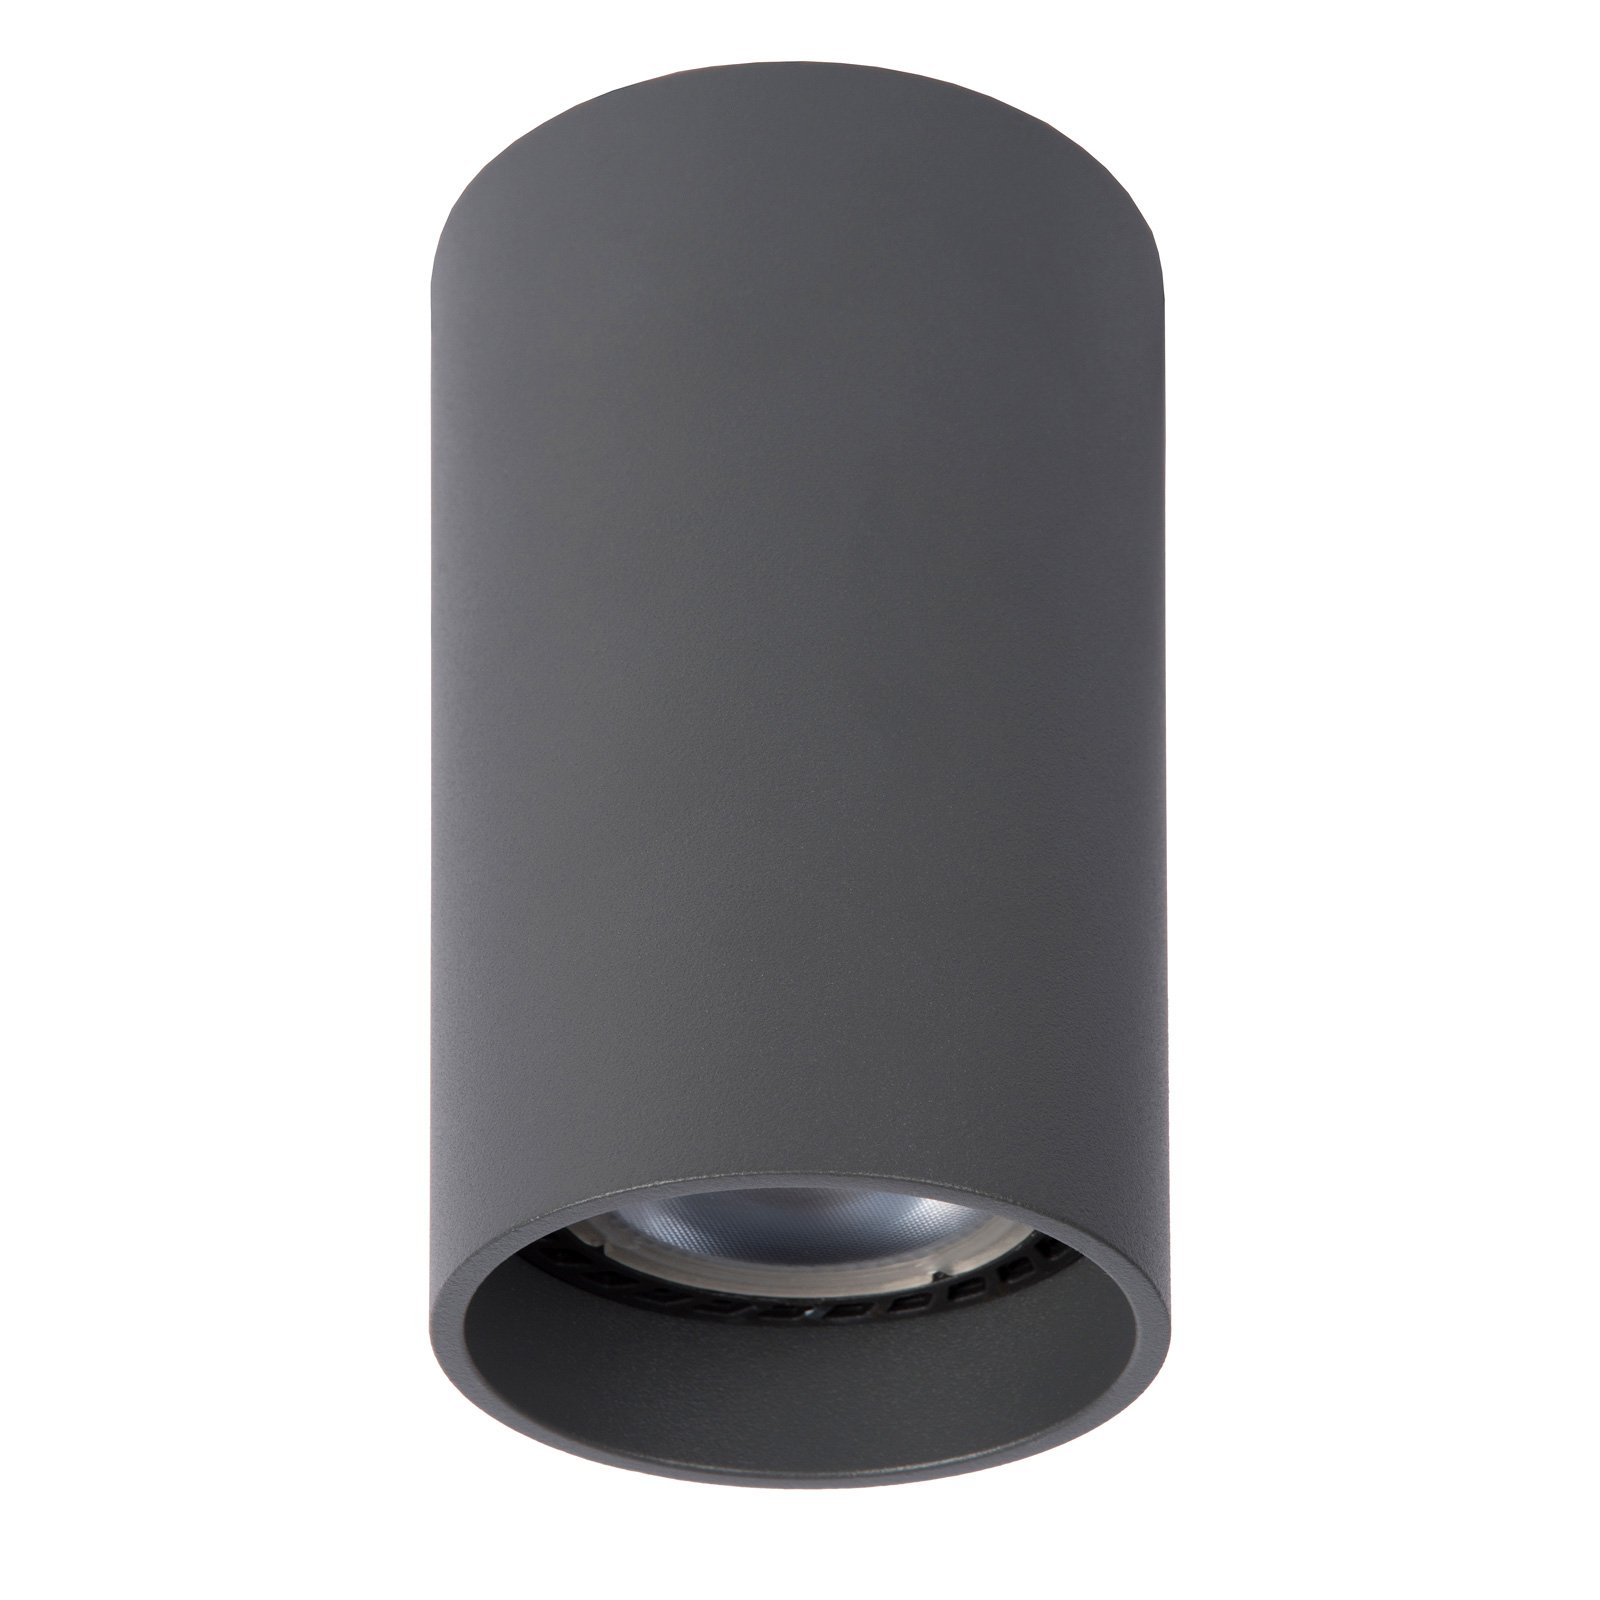 Plafonnier LED Delto dim to warm, rond, gris